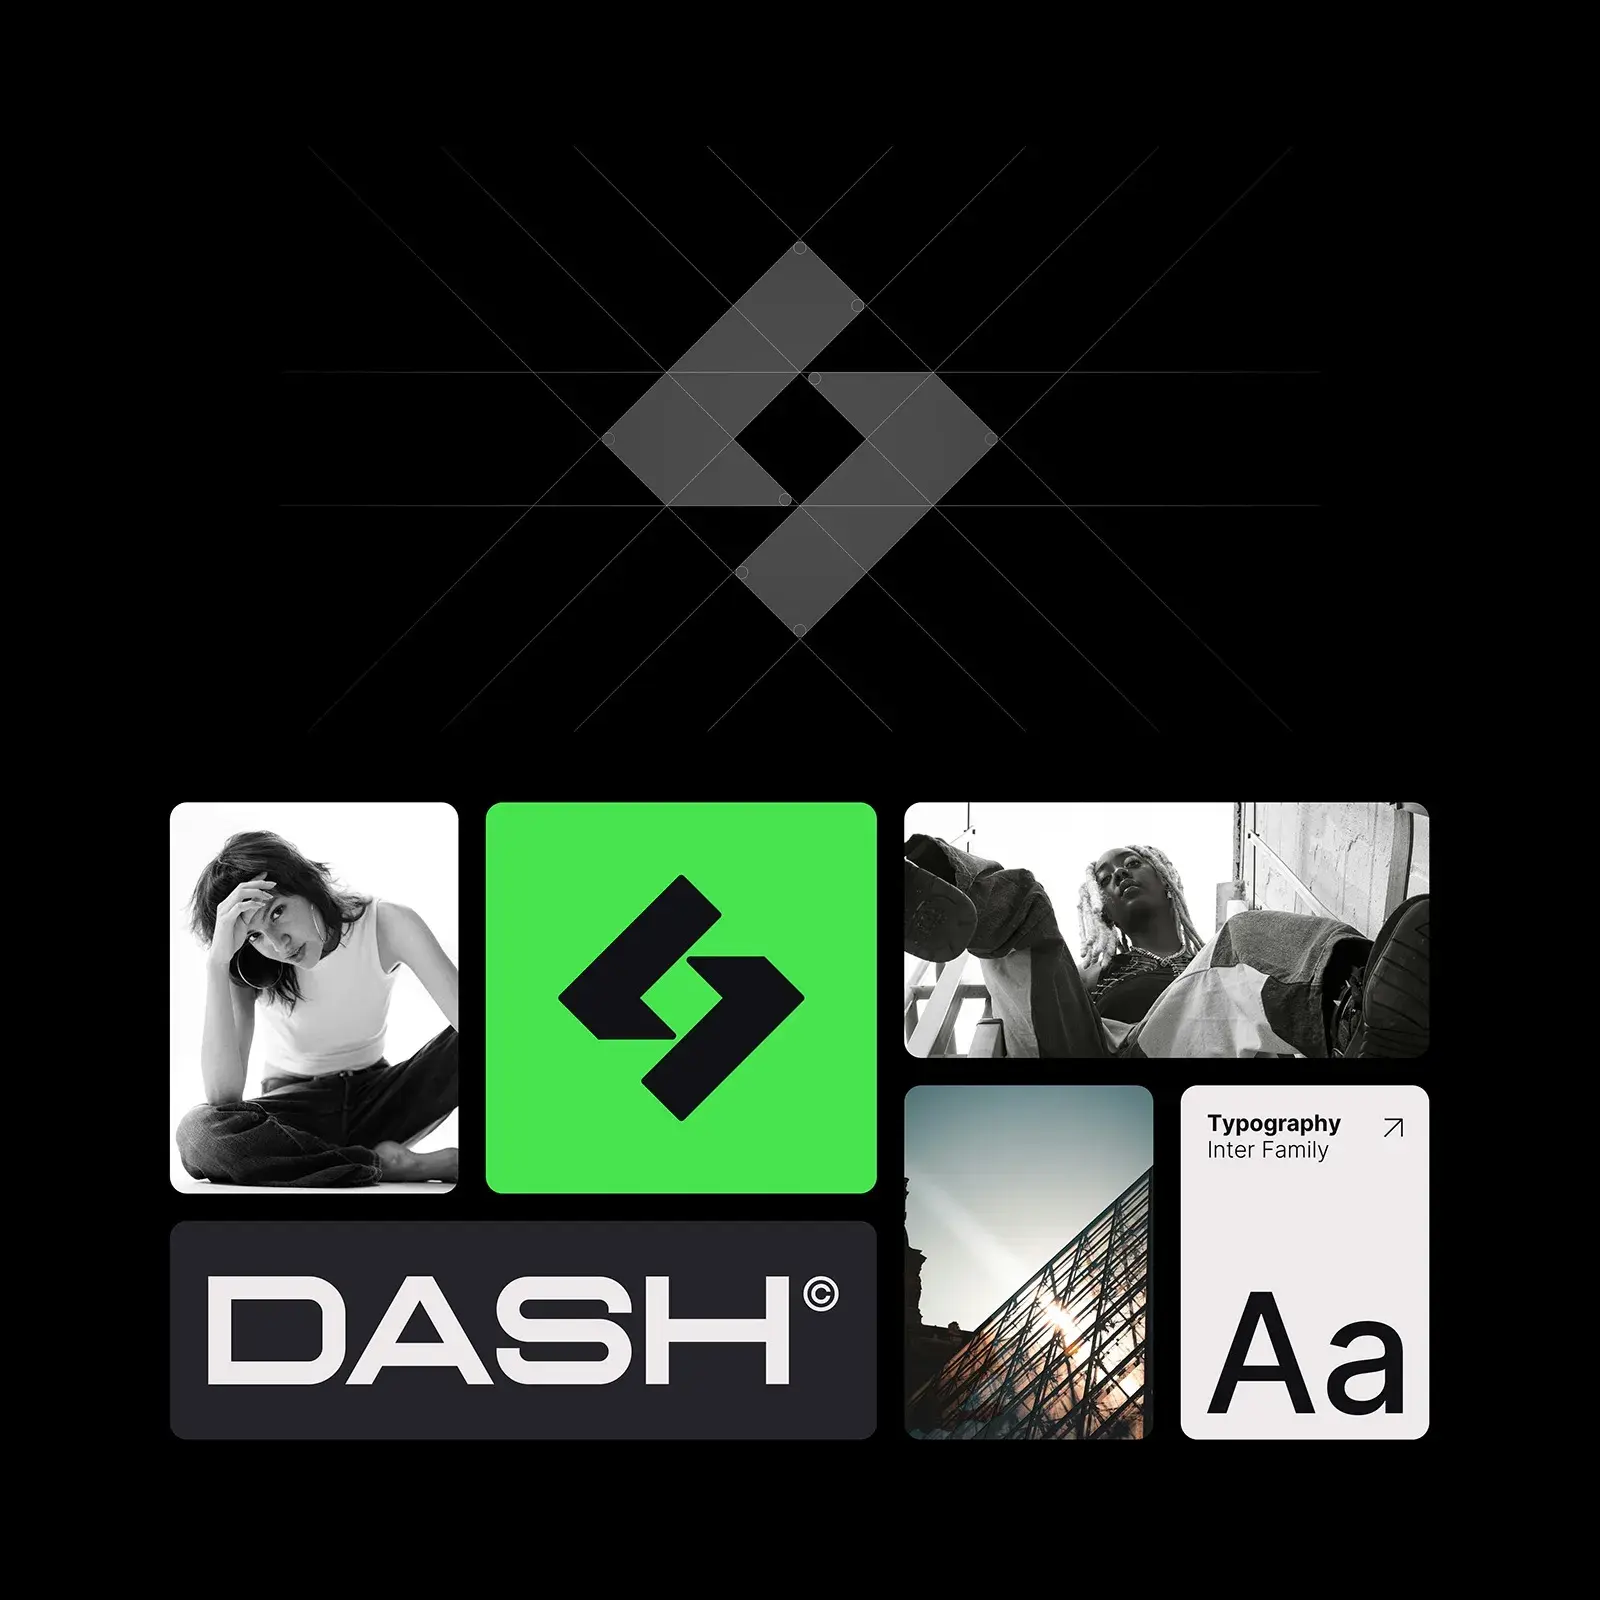 Dash Brand Identity: A Beacon in Urban Fashion Culture